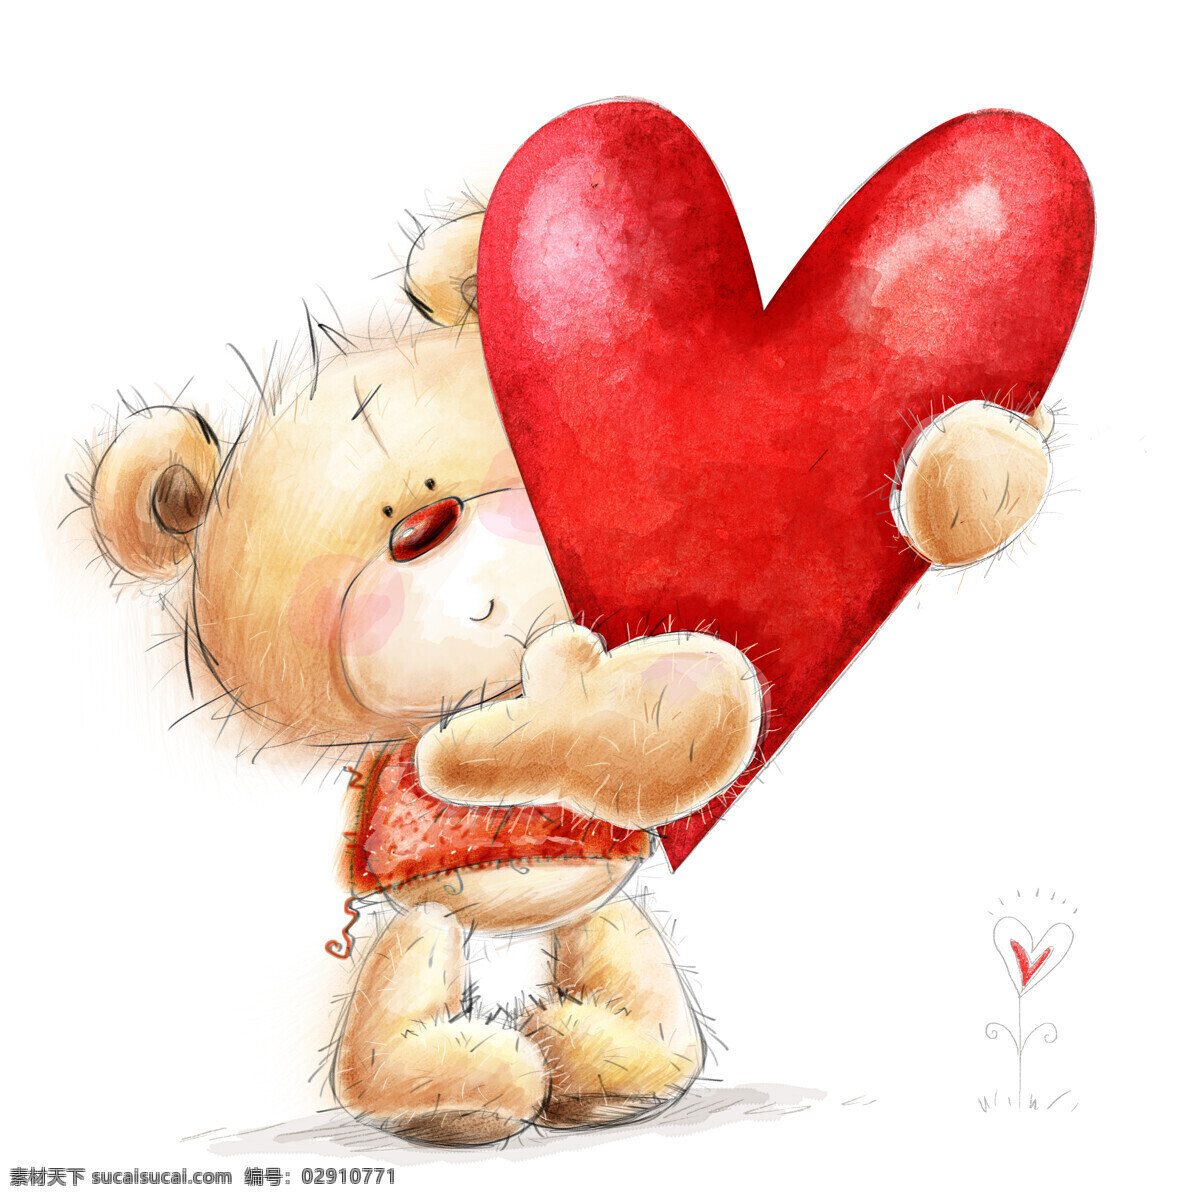 抱 红色 心形 的卡 通 小 熊 节日庆典 节日元素 卡通动物插图 红色心形 生日快乐 卡通小熊 生活百科